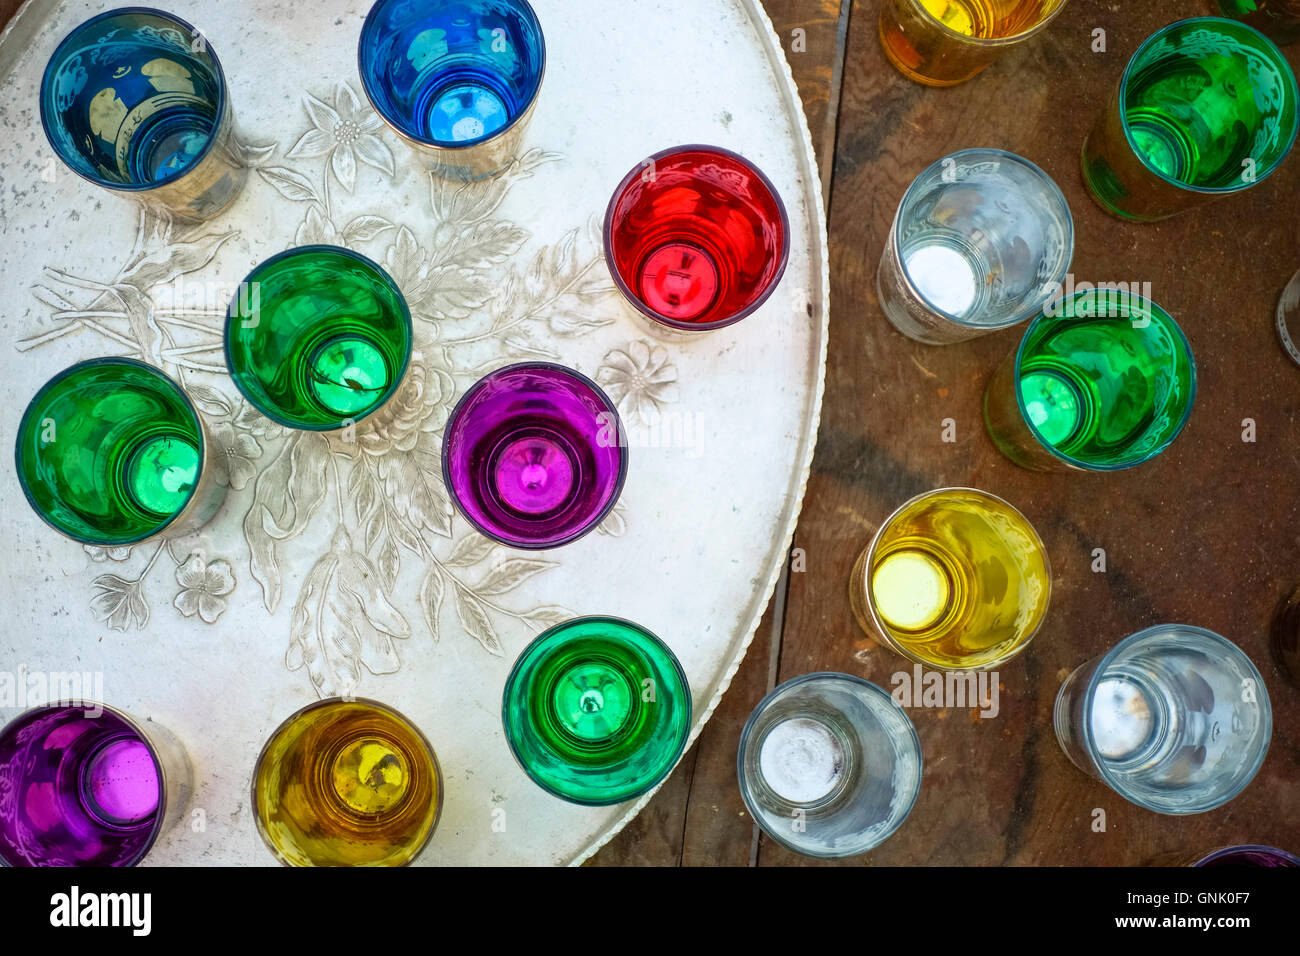 Groupe des verres à thé marocains colorés gravés sur le plateau de service Banque D'Images